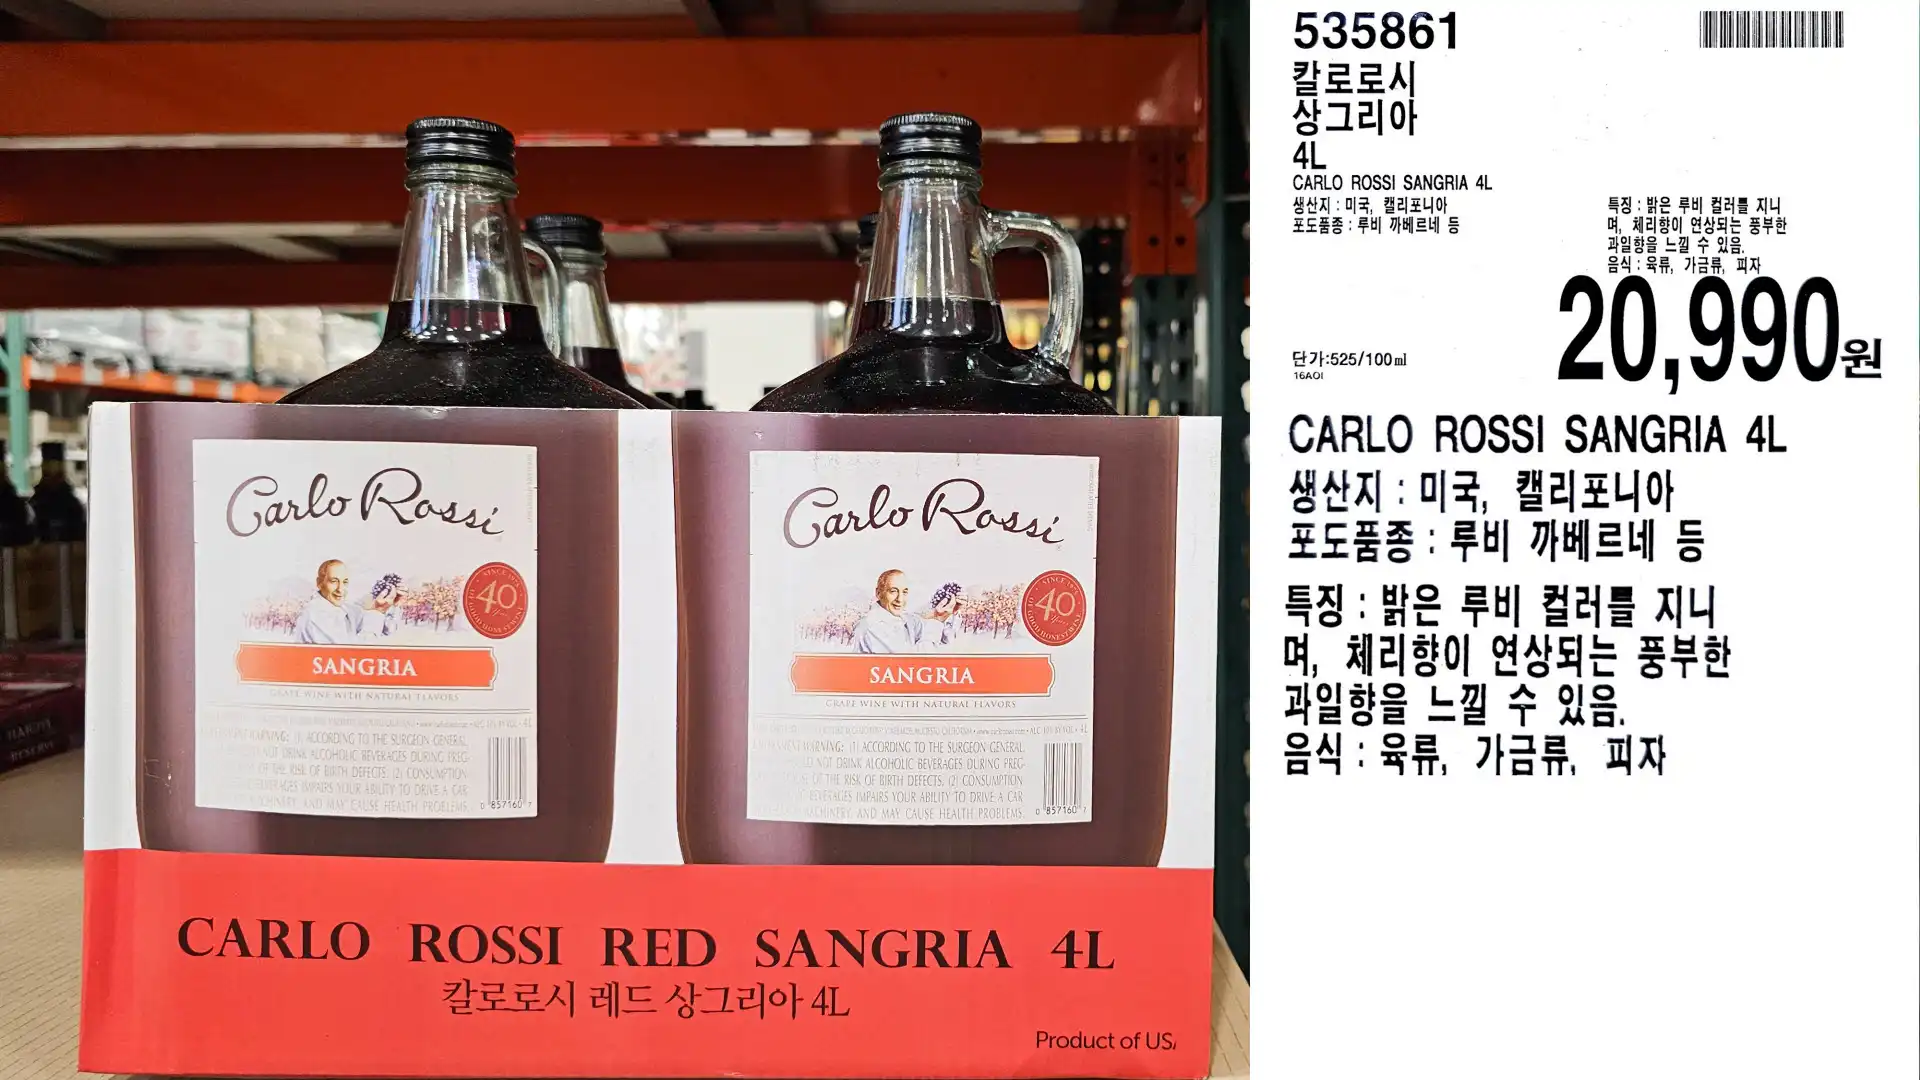 칼로로시
상그리아
4L
CARLO ROSSI SANGRIA 4L
생산지 : 미국 캘리포니아
특징: 밝은 루비 컬러를 지니
포도품종: 루비 까베르네 등
단가:525/100ml
20.990원